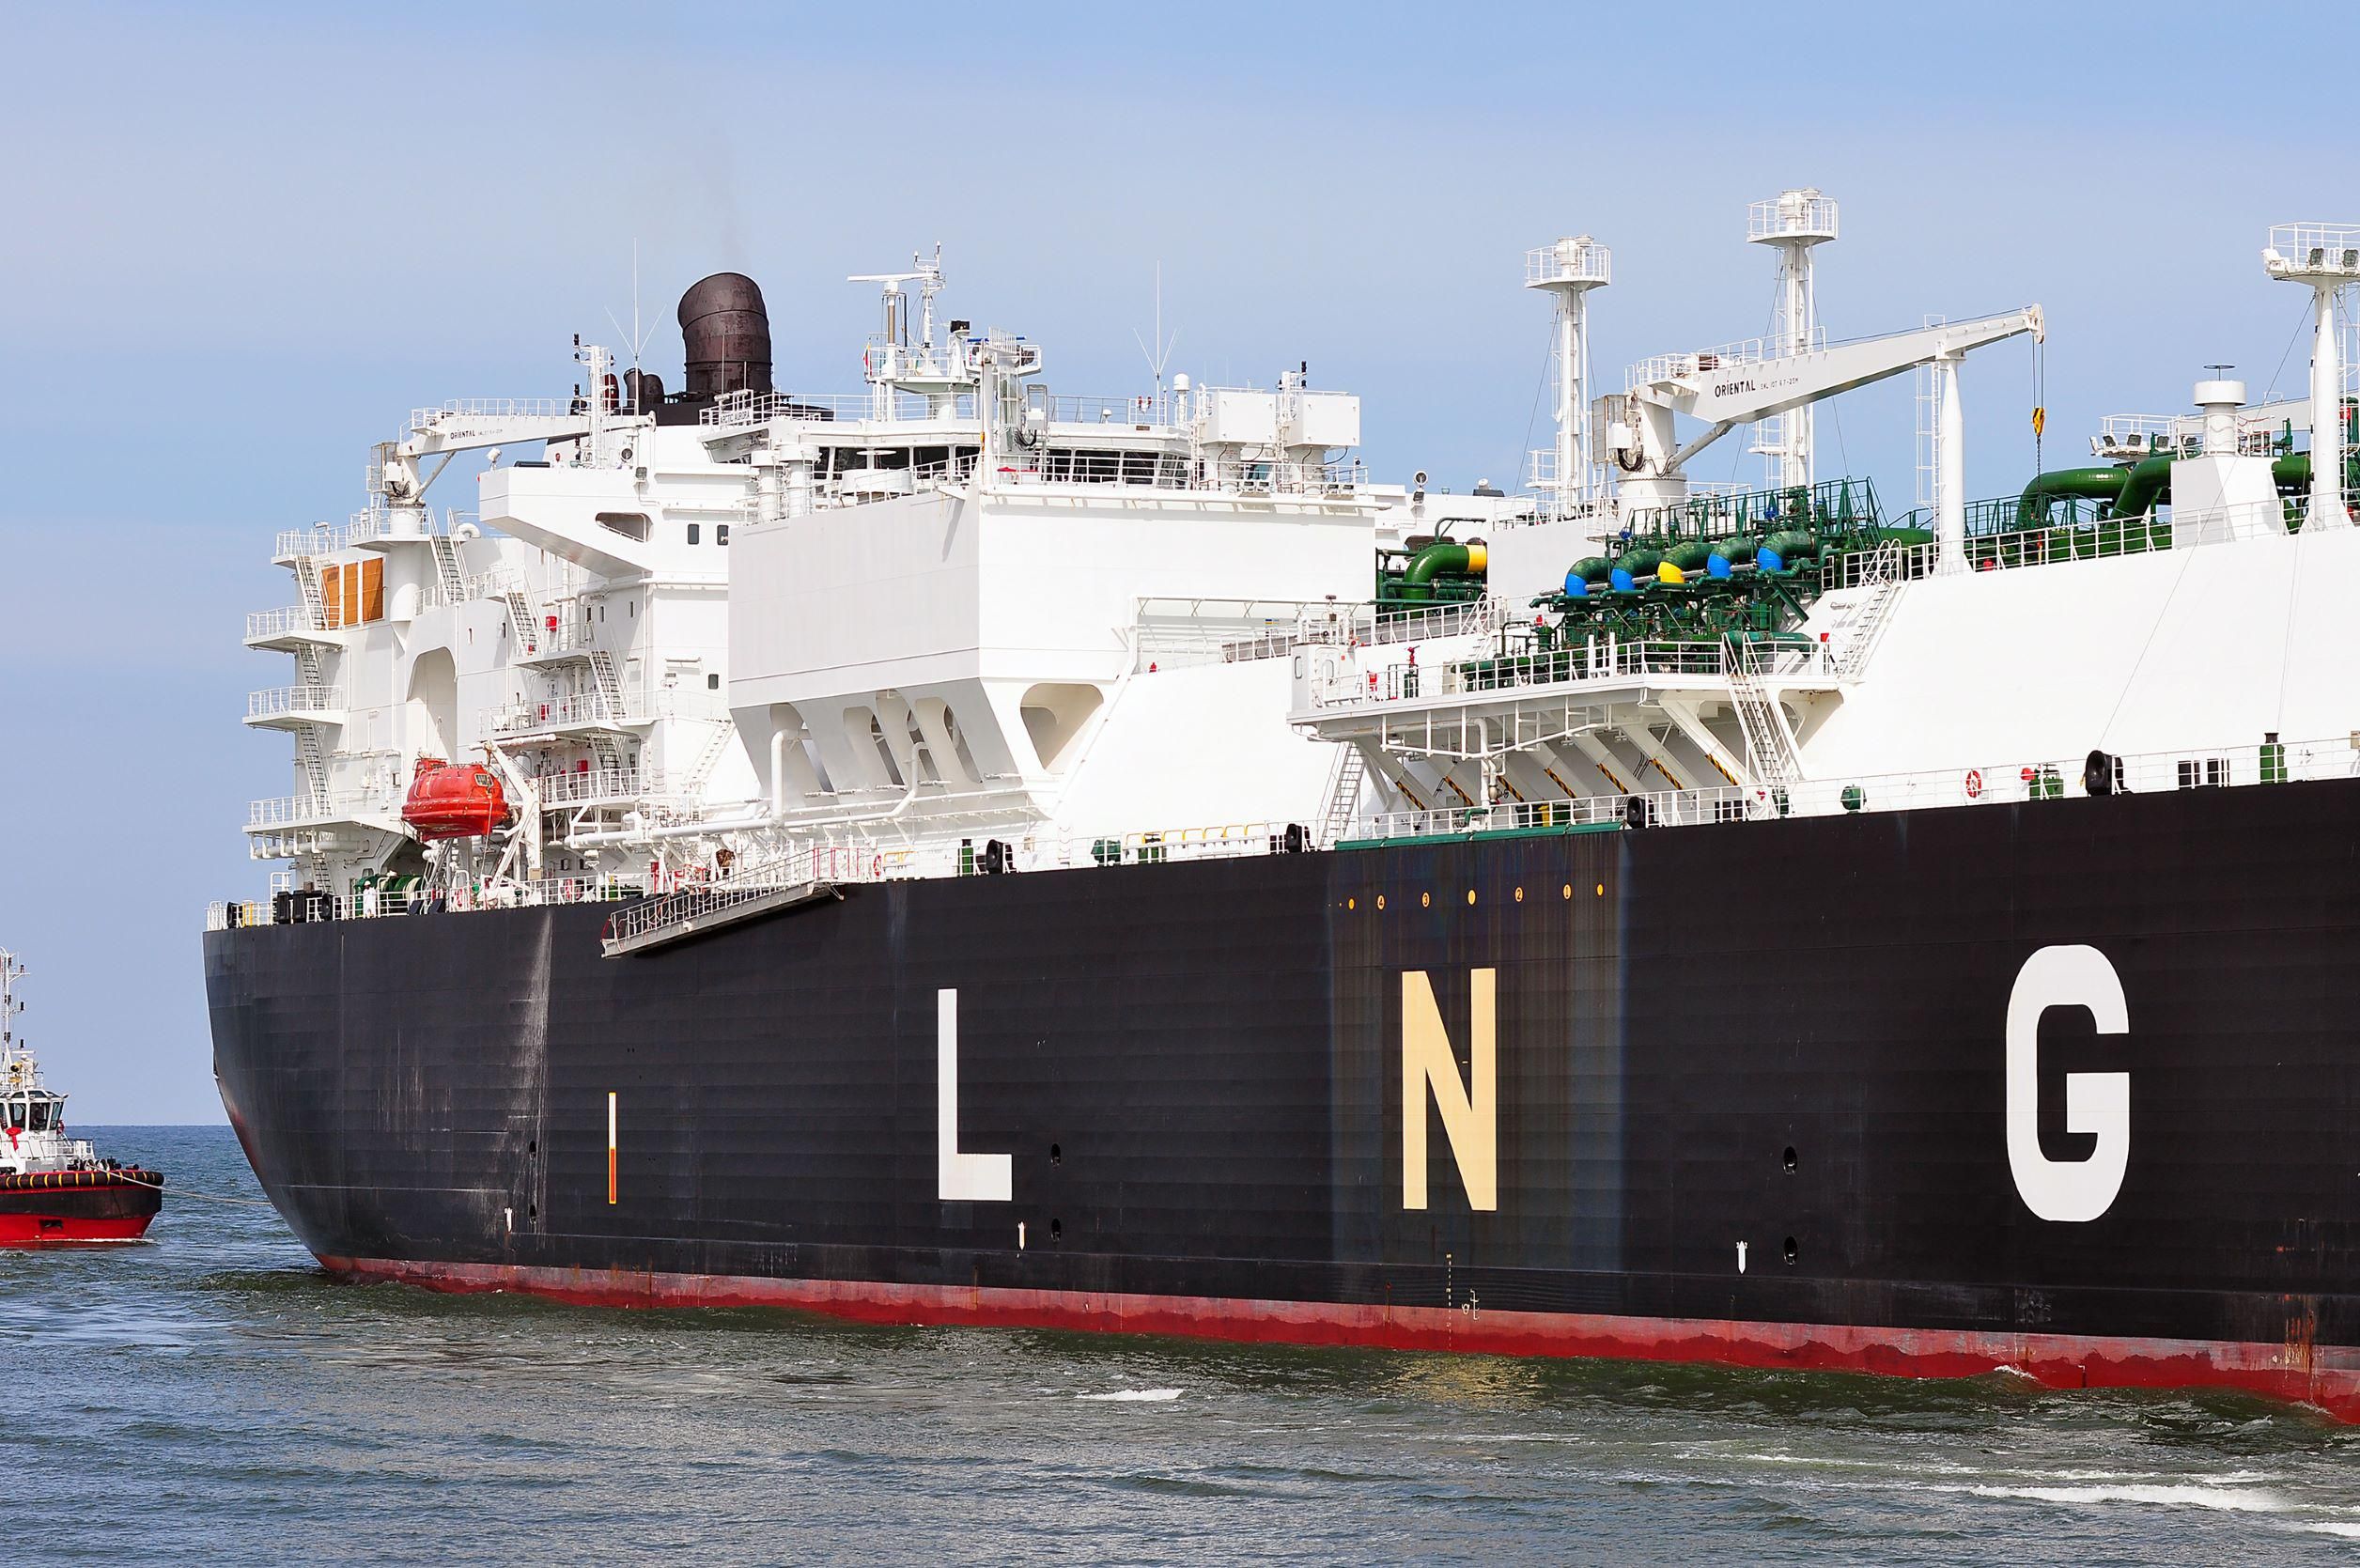 Ehhez hasonló LNG-tankerek szállítják a gázt Európába